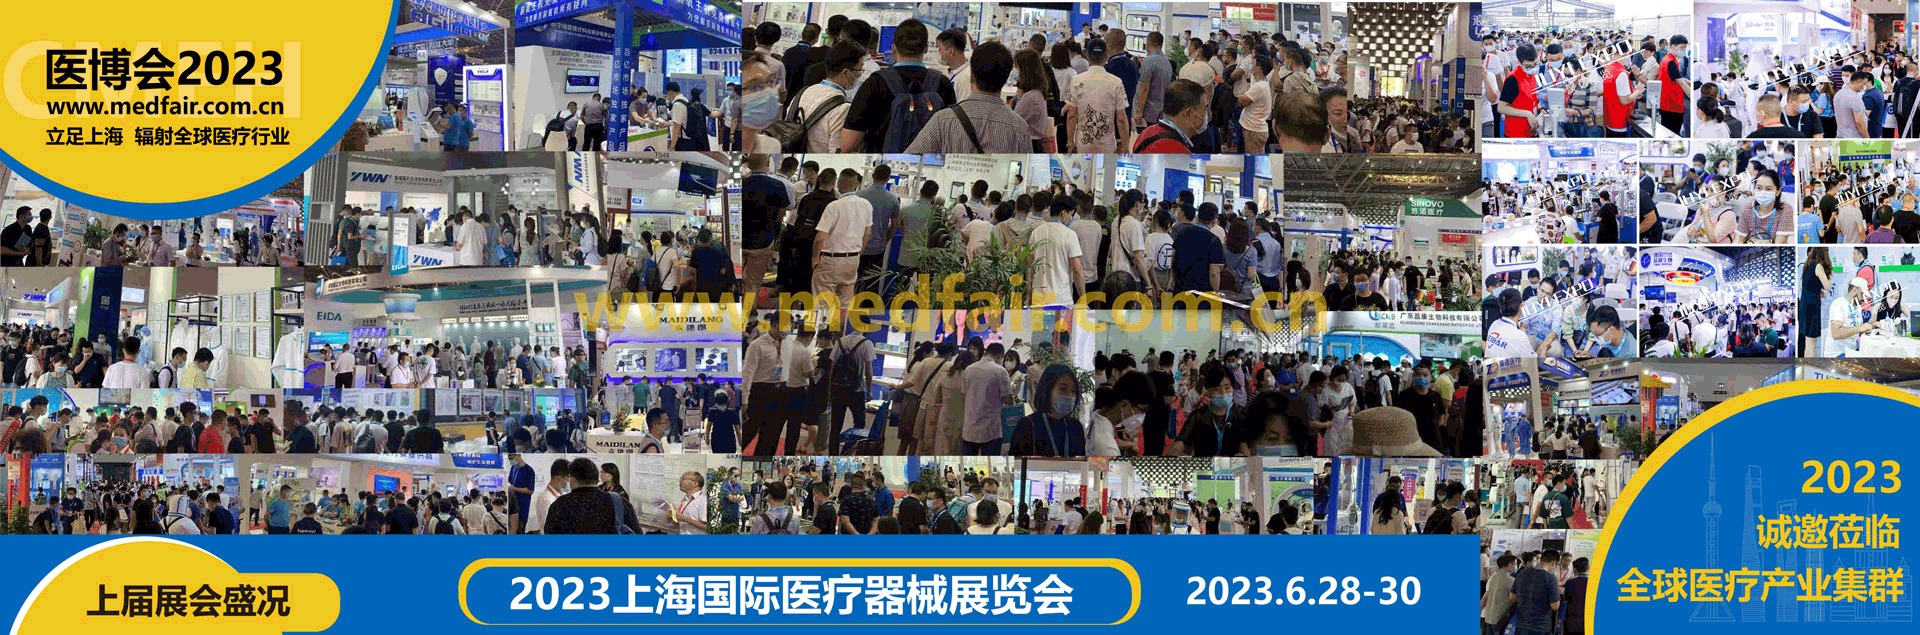 2023上海国际医疗器械展览会预热篇